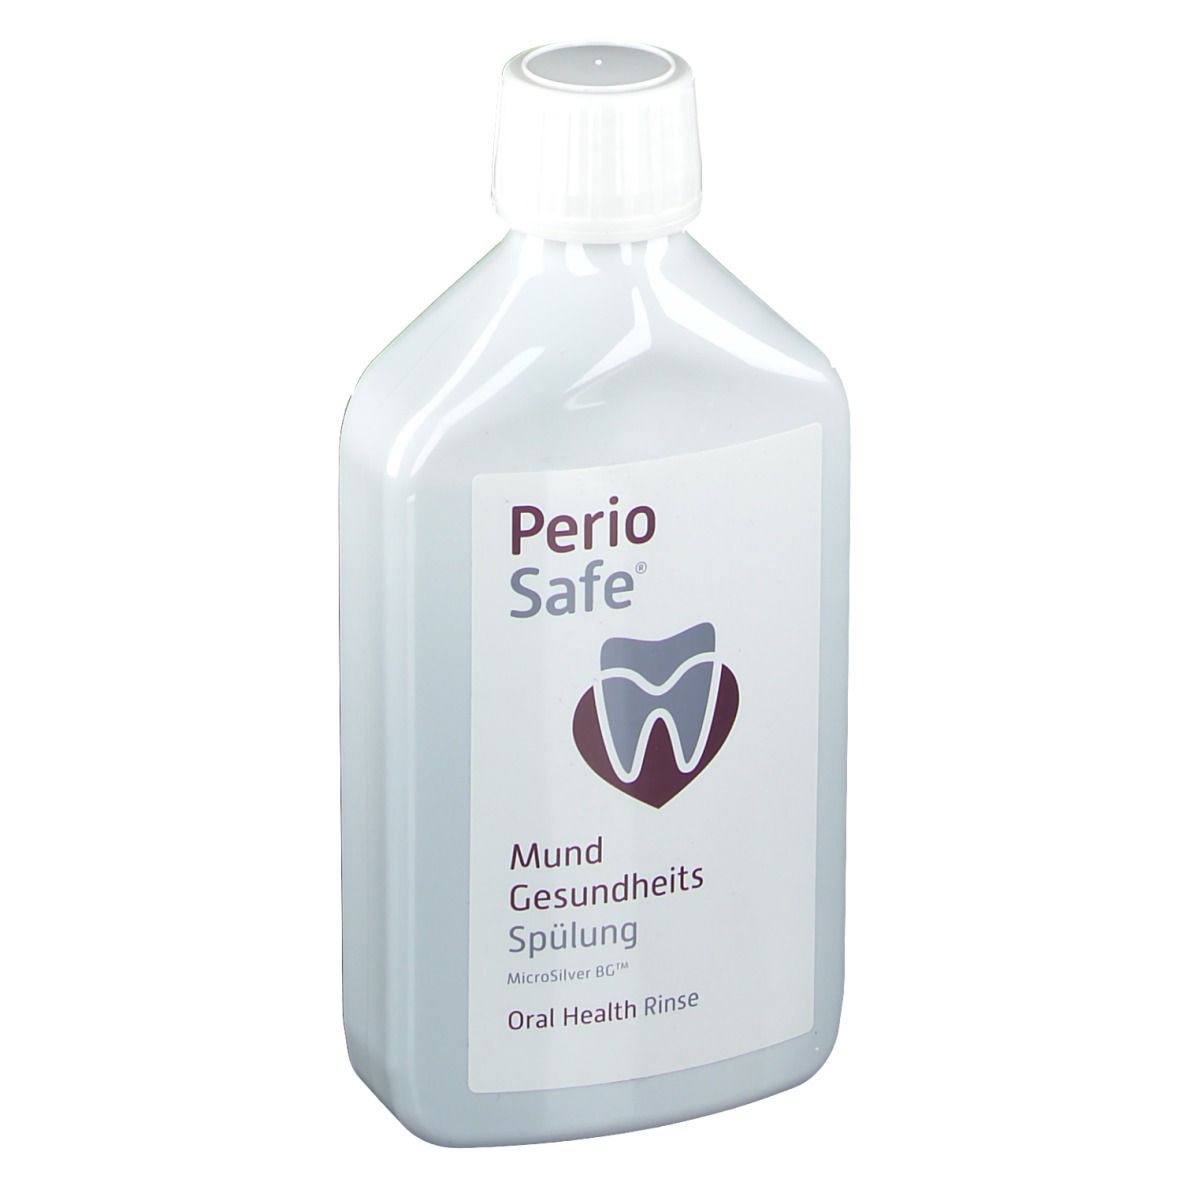 PerioSafe® Mundgesundheits-Spülung